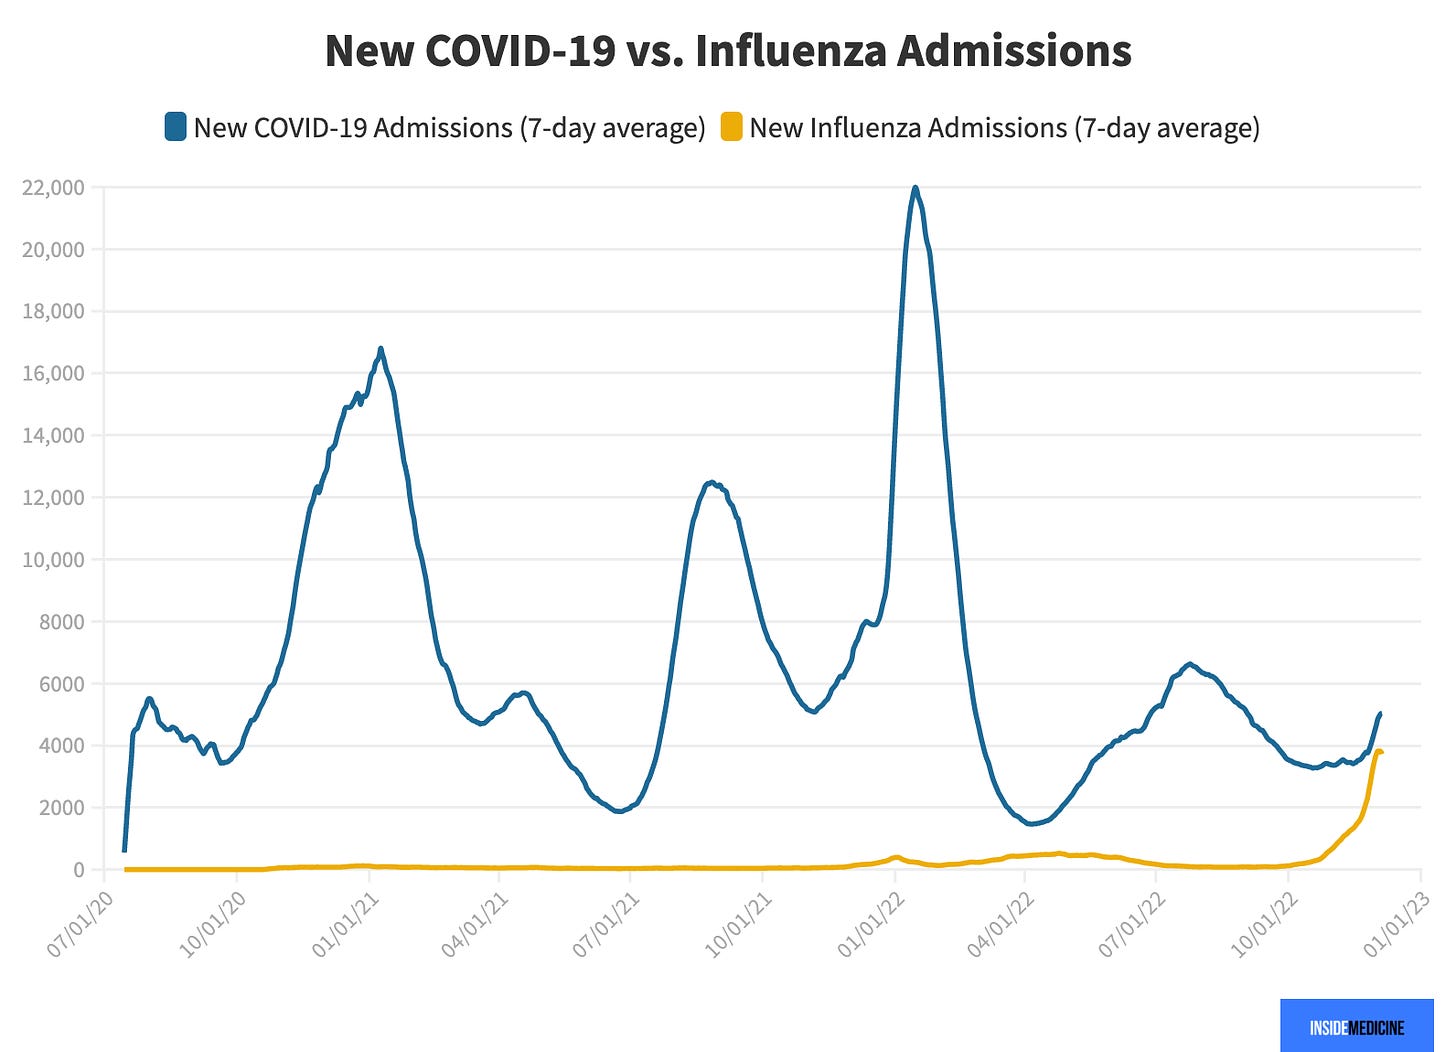 New Covid vs flu admissions